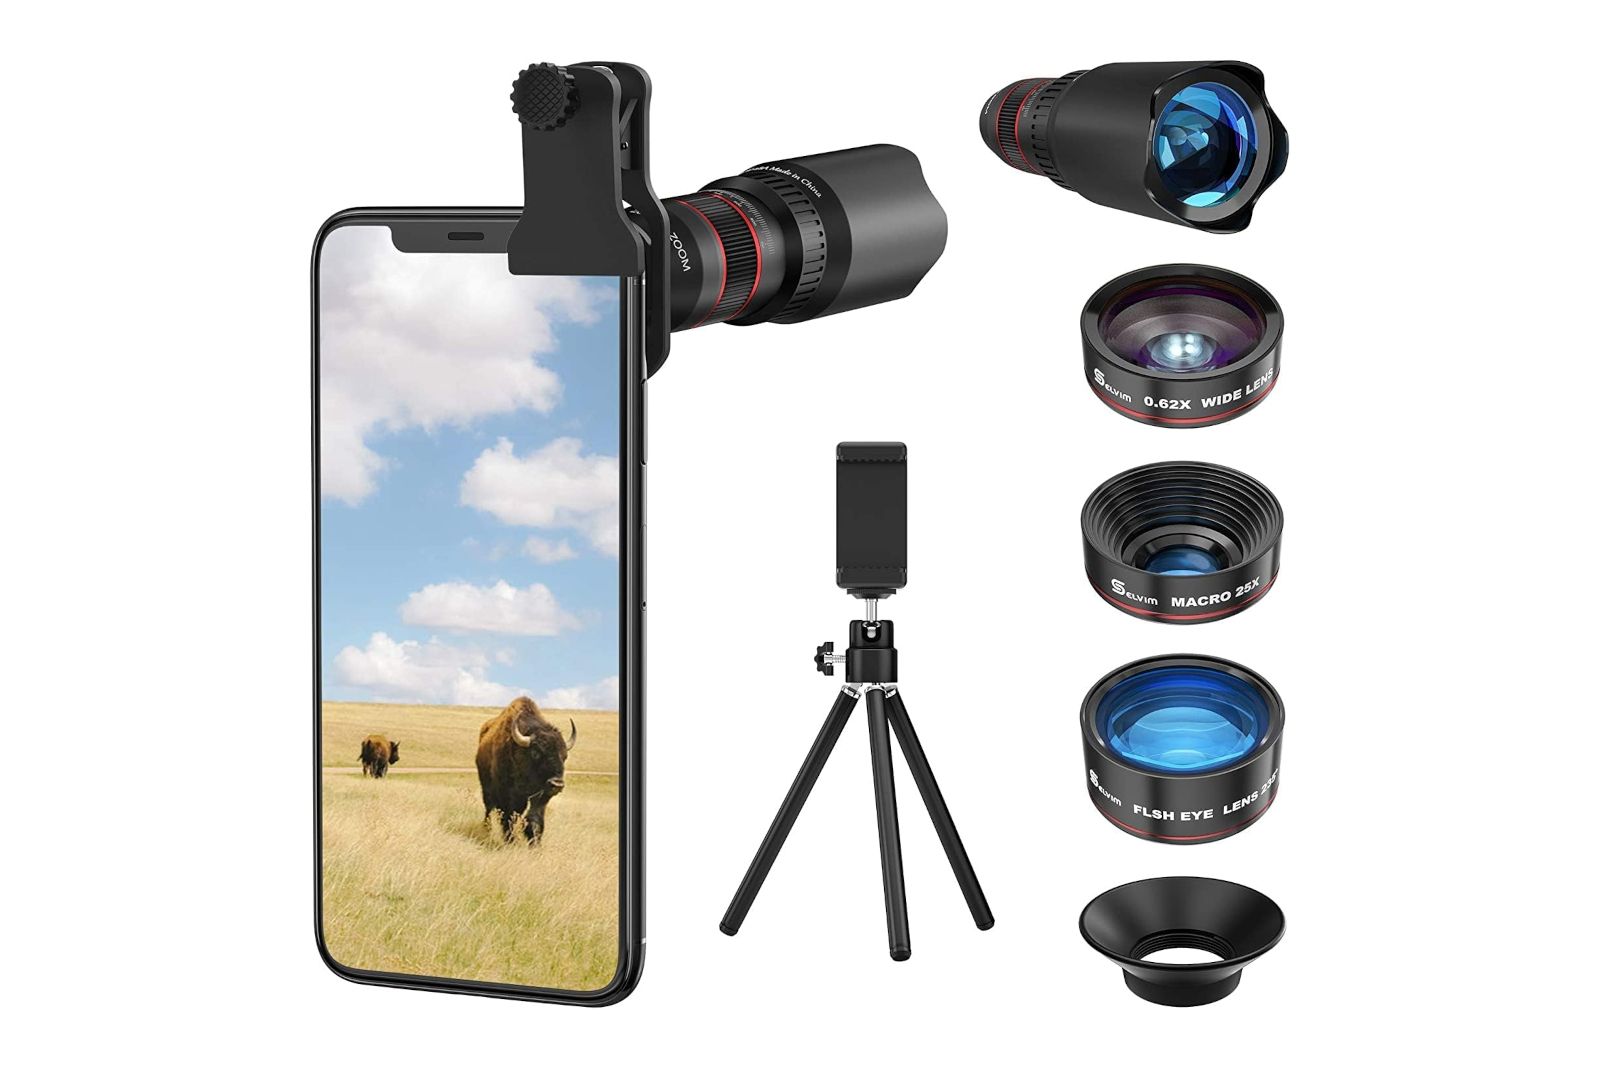 Selvim Phone Camera Lens kit